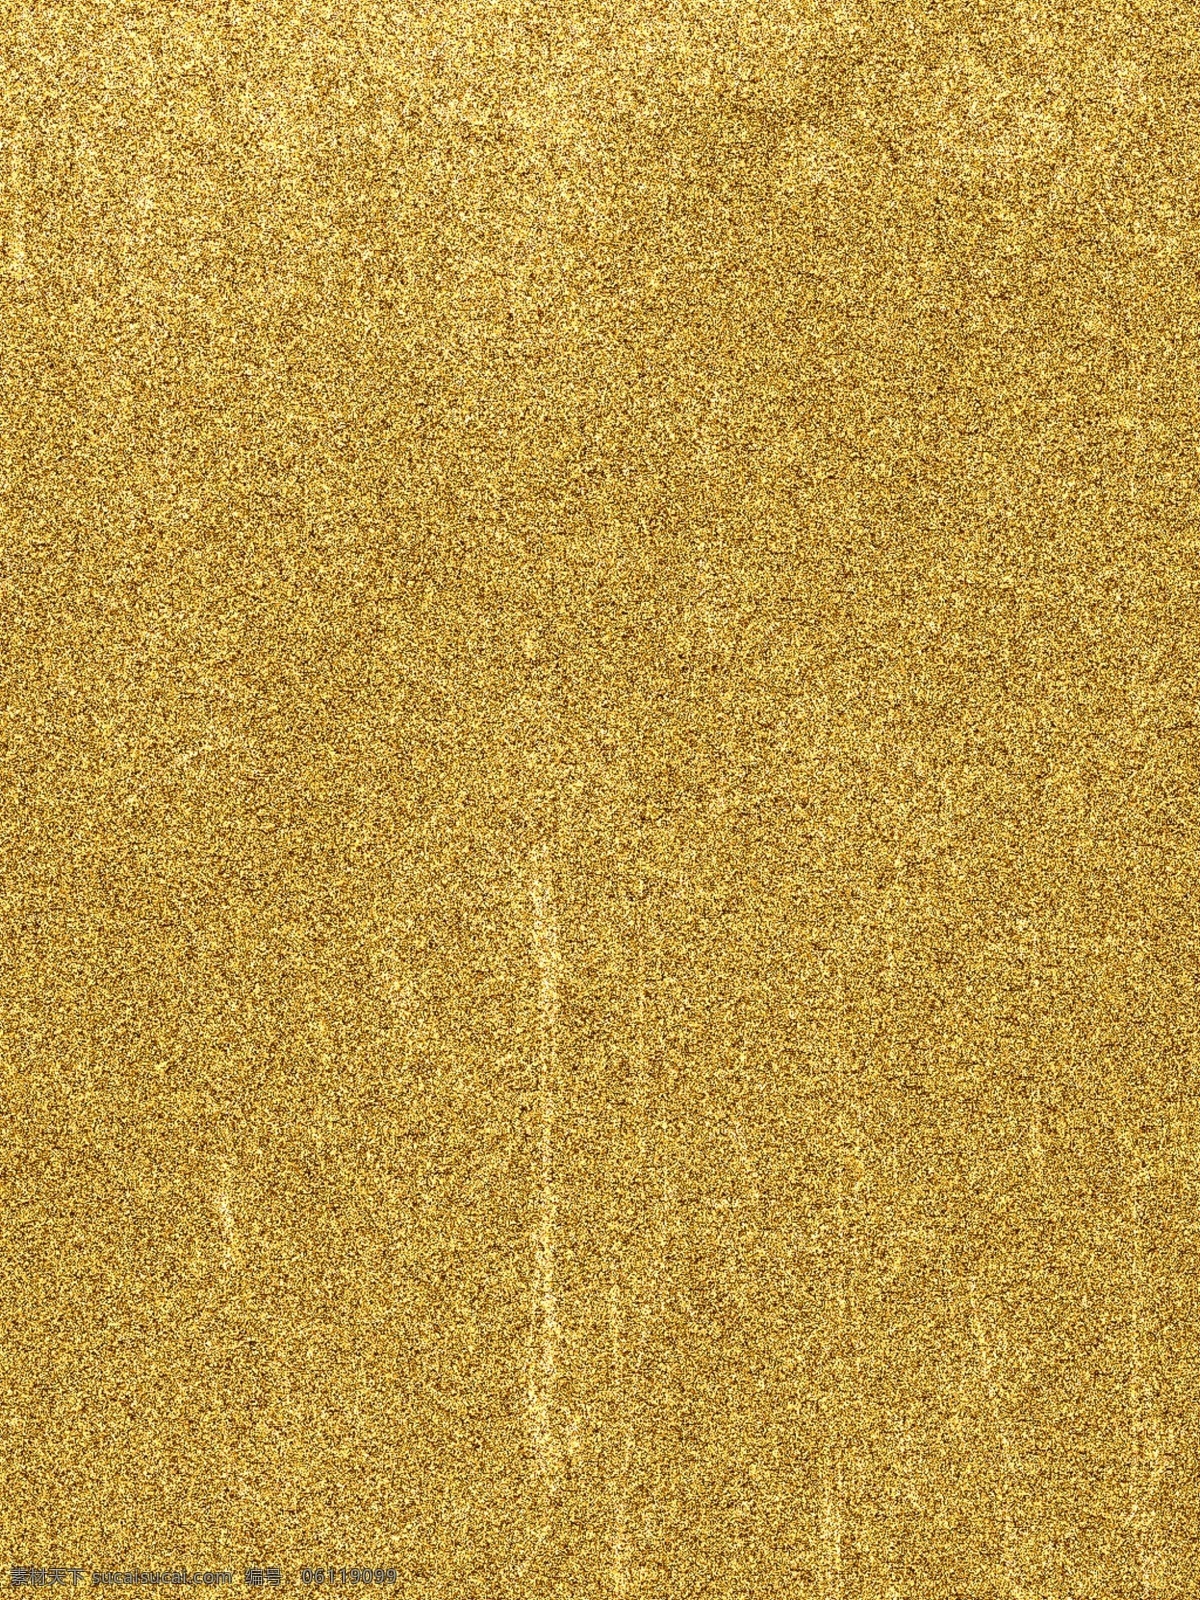 划痕 纹理 质感 金属 背景 金色 金色背景 金属材质 黄金 金 金箔 金属材质贴图